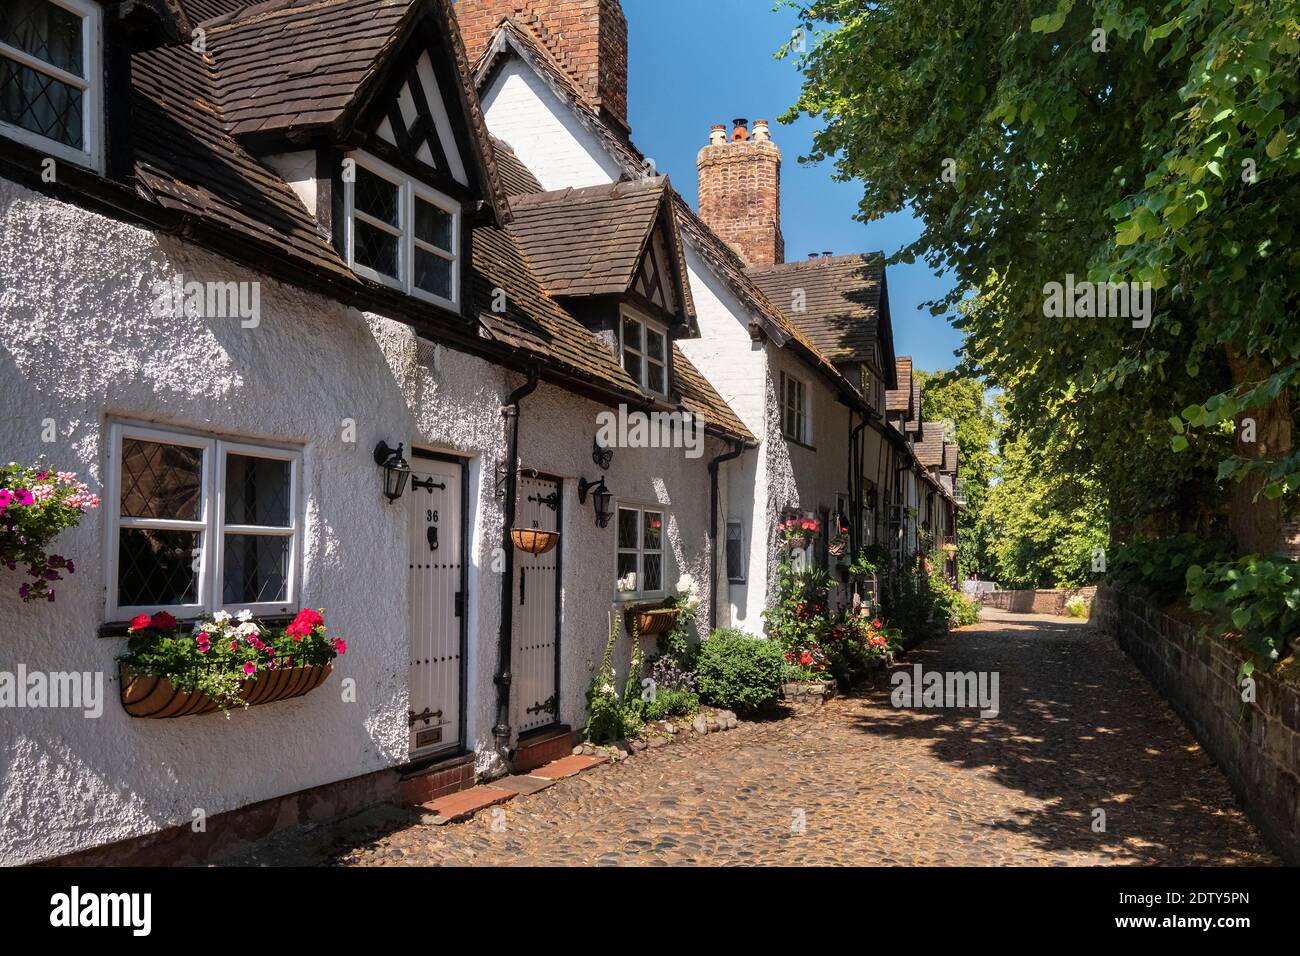 Village de Great Budworth en été, Great Budworth, Cheshire, Angleterre, Royaume-Uni Banque D'Images